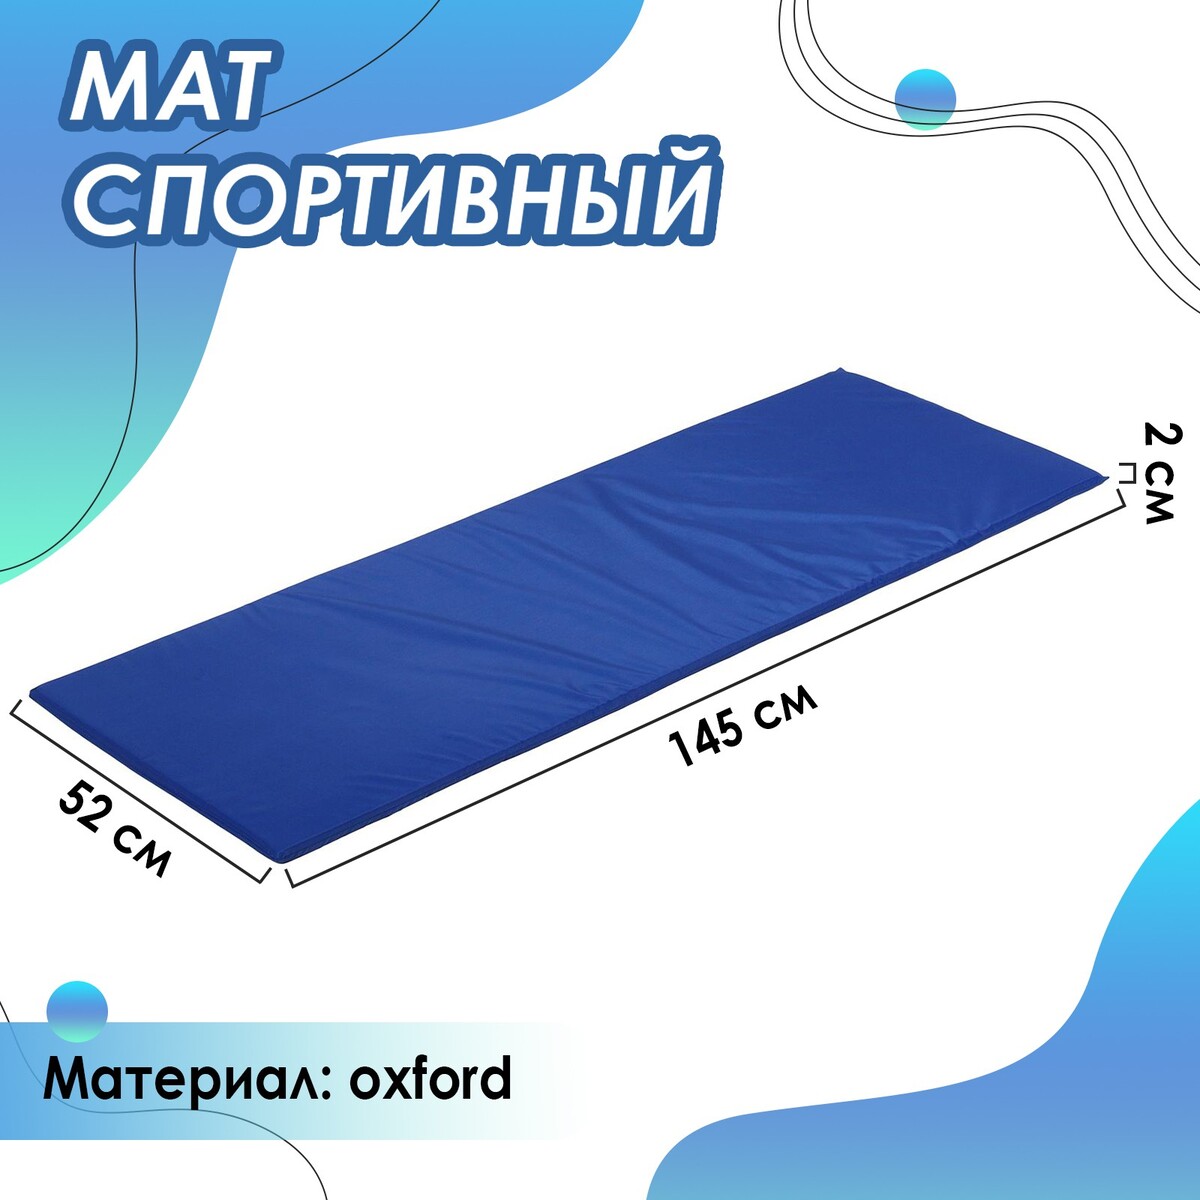 Мат мягкий onlytop, 145х52х2 см, цвет синий ONLYTOP